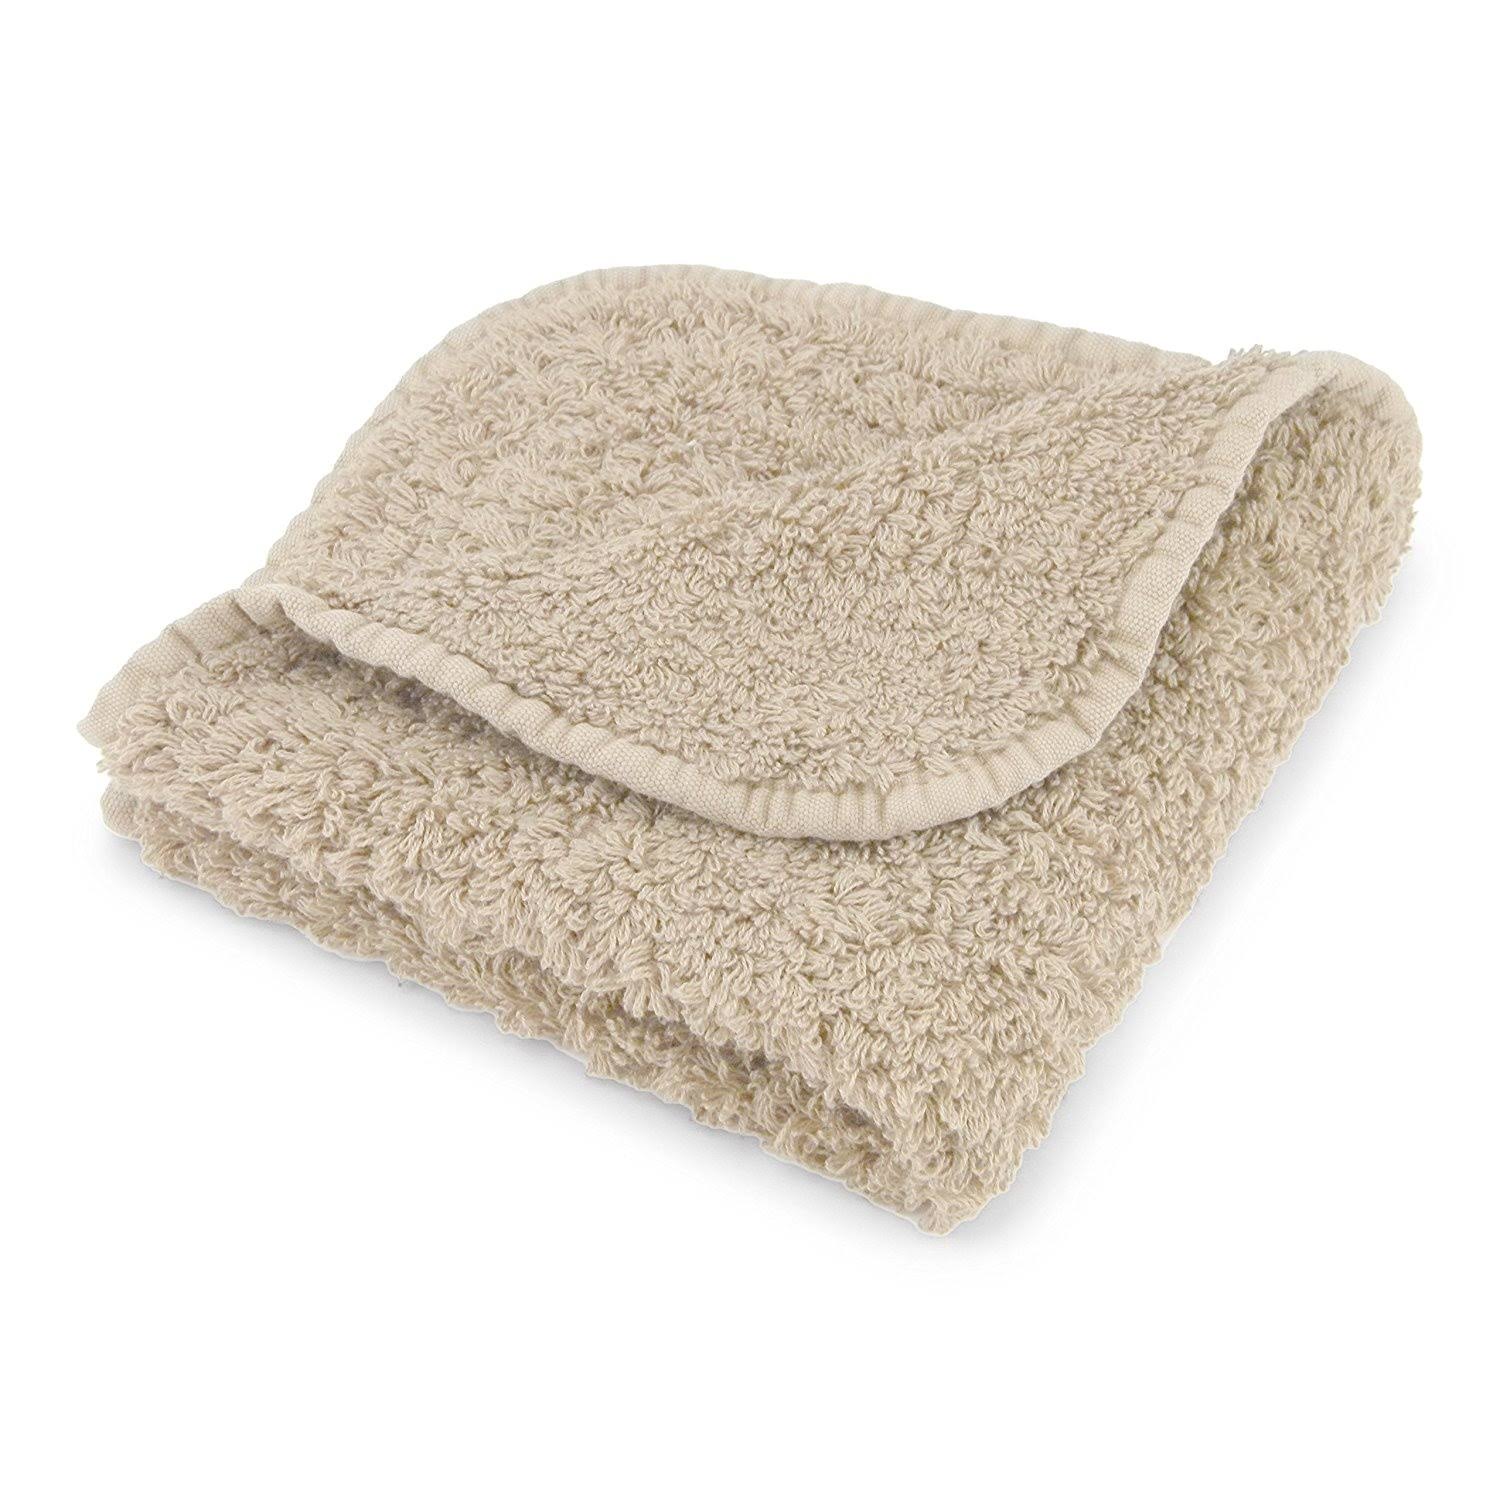 Abyss Super Pile Bath Towel - 28" x 54"